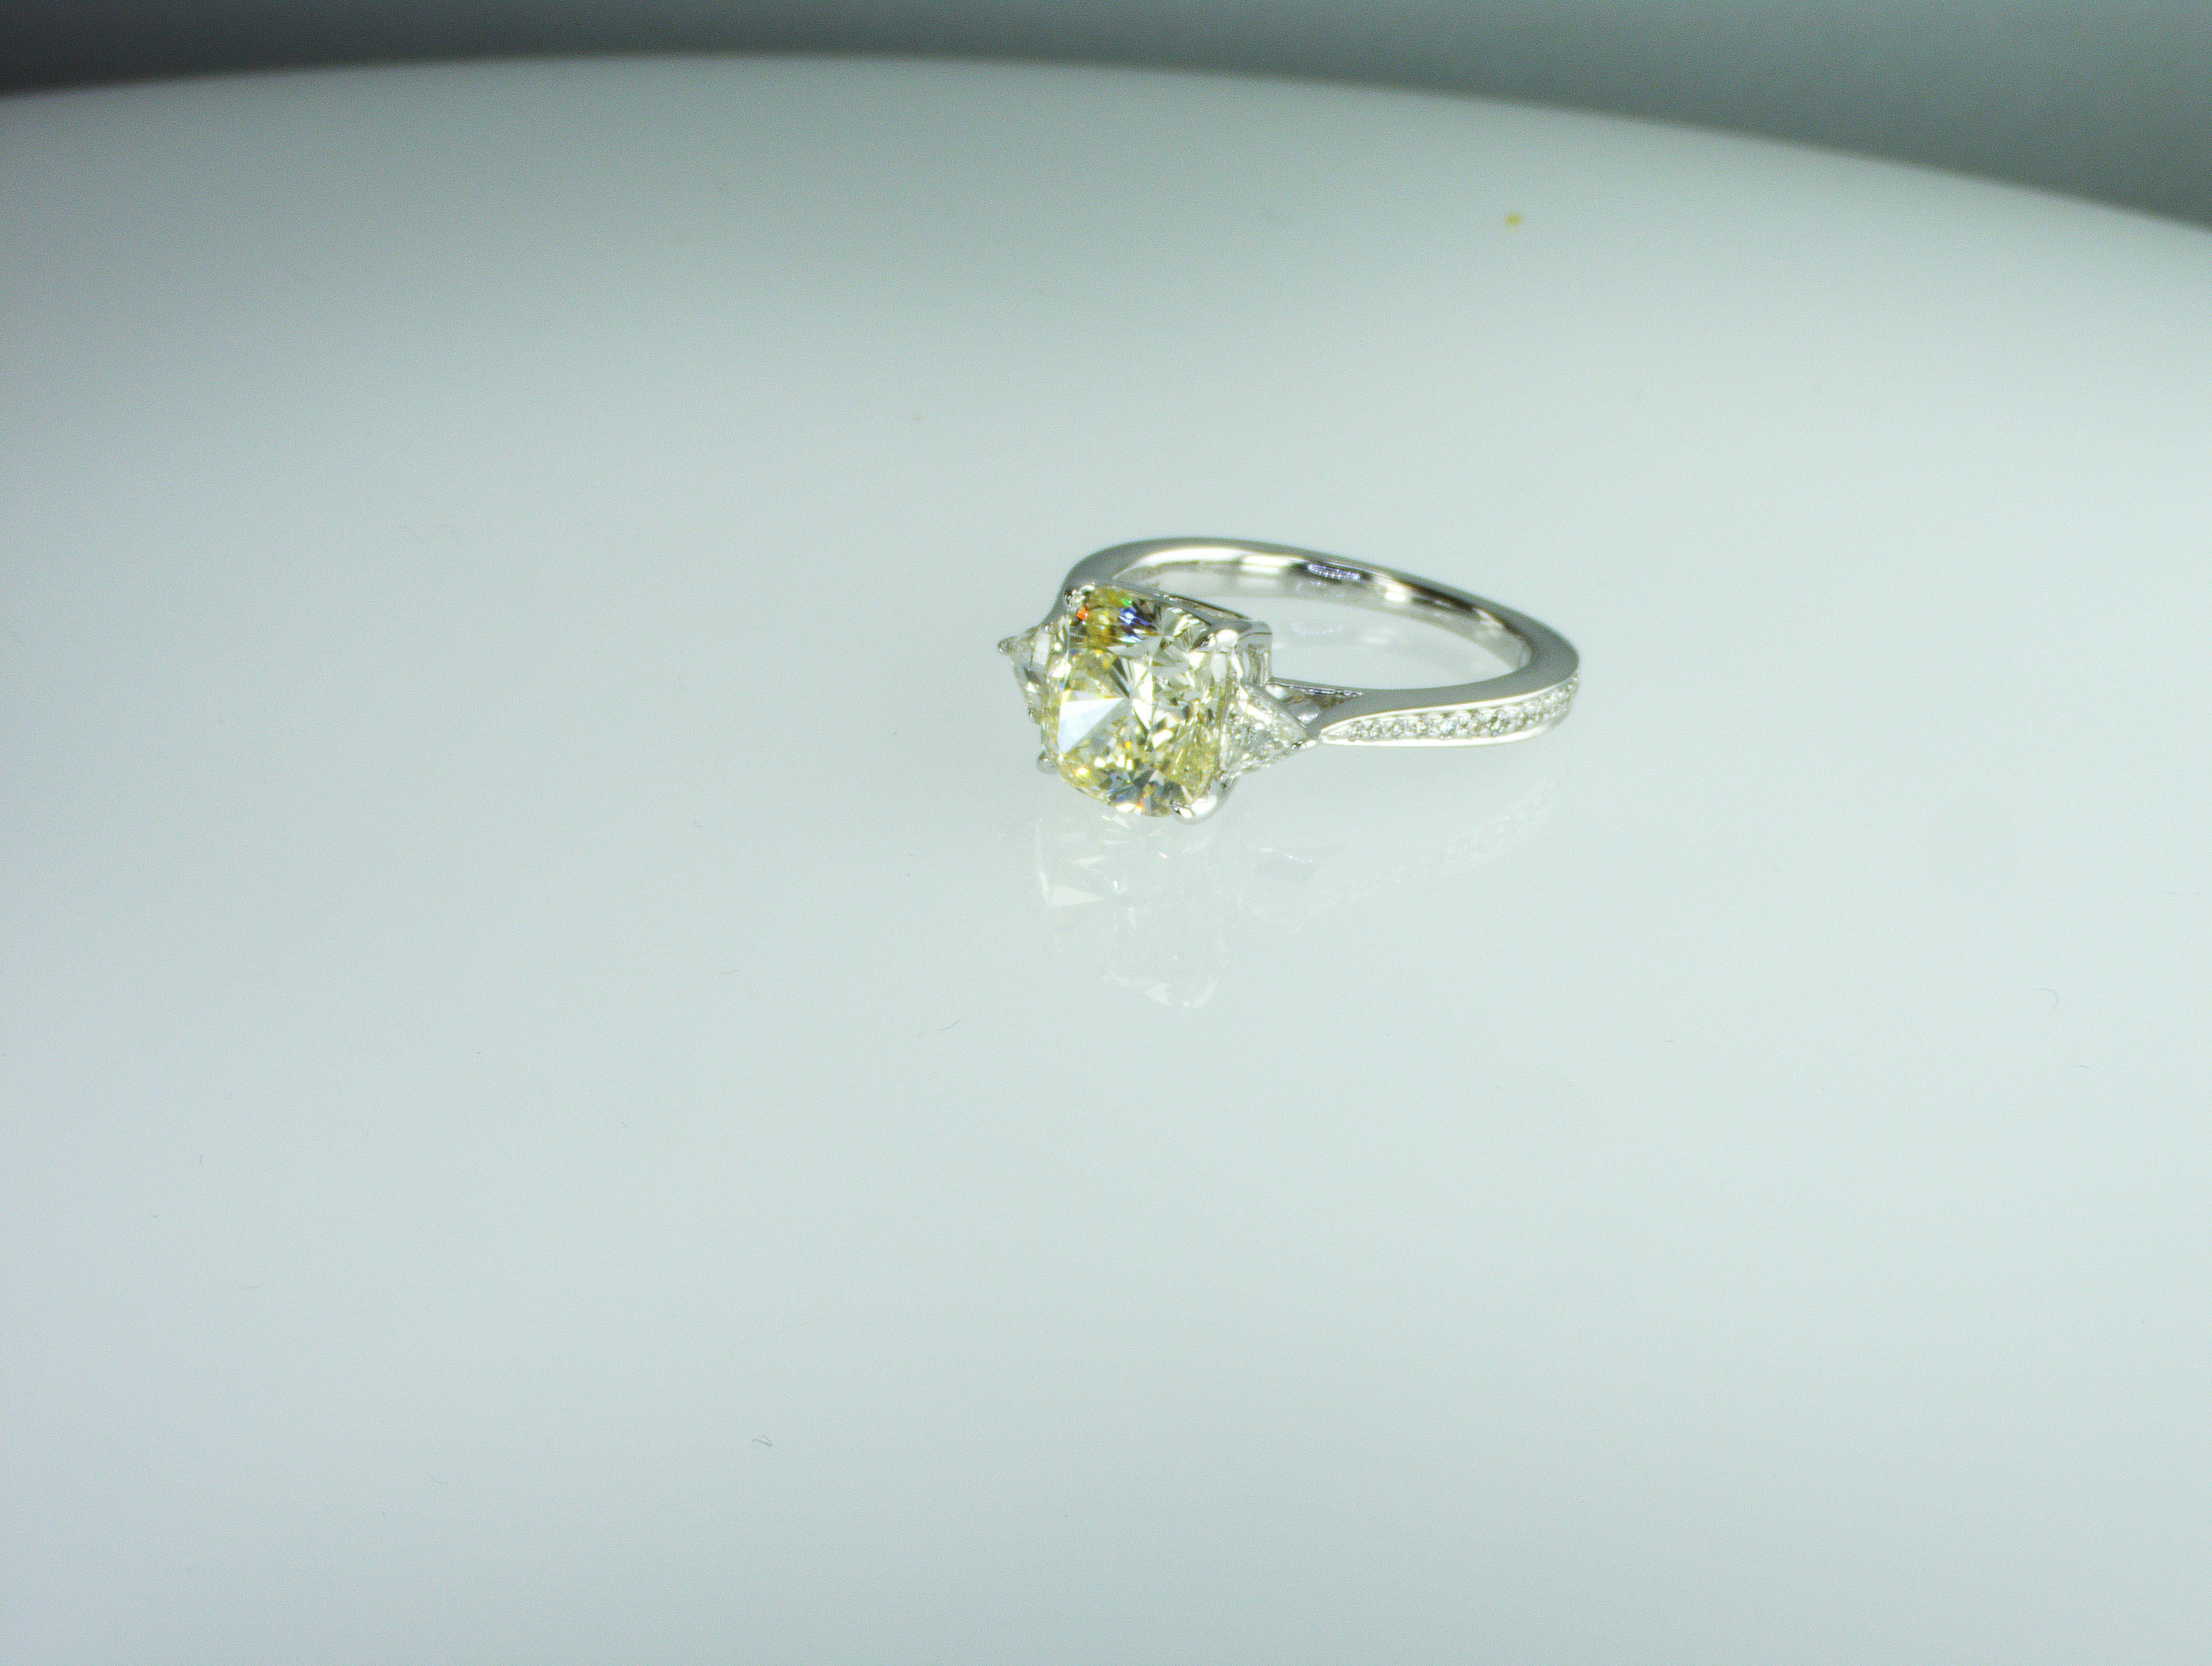 Nous sommes une société de production de diamants naturels située à Dubaï. 
Boucles d'oreilles en diamant naturel de 3 carats d'une beauté absolue.
Description :
Diamant de 3 carats :
Coussin de forme
Grade de couleur - TW (L) -TC
Clarté -SI
2